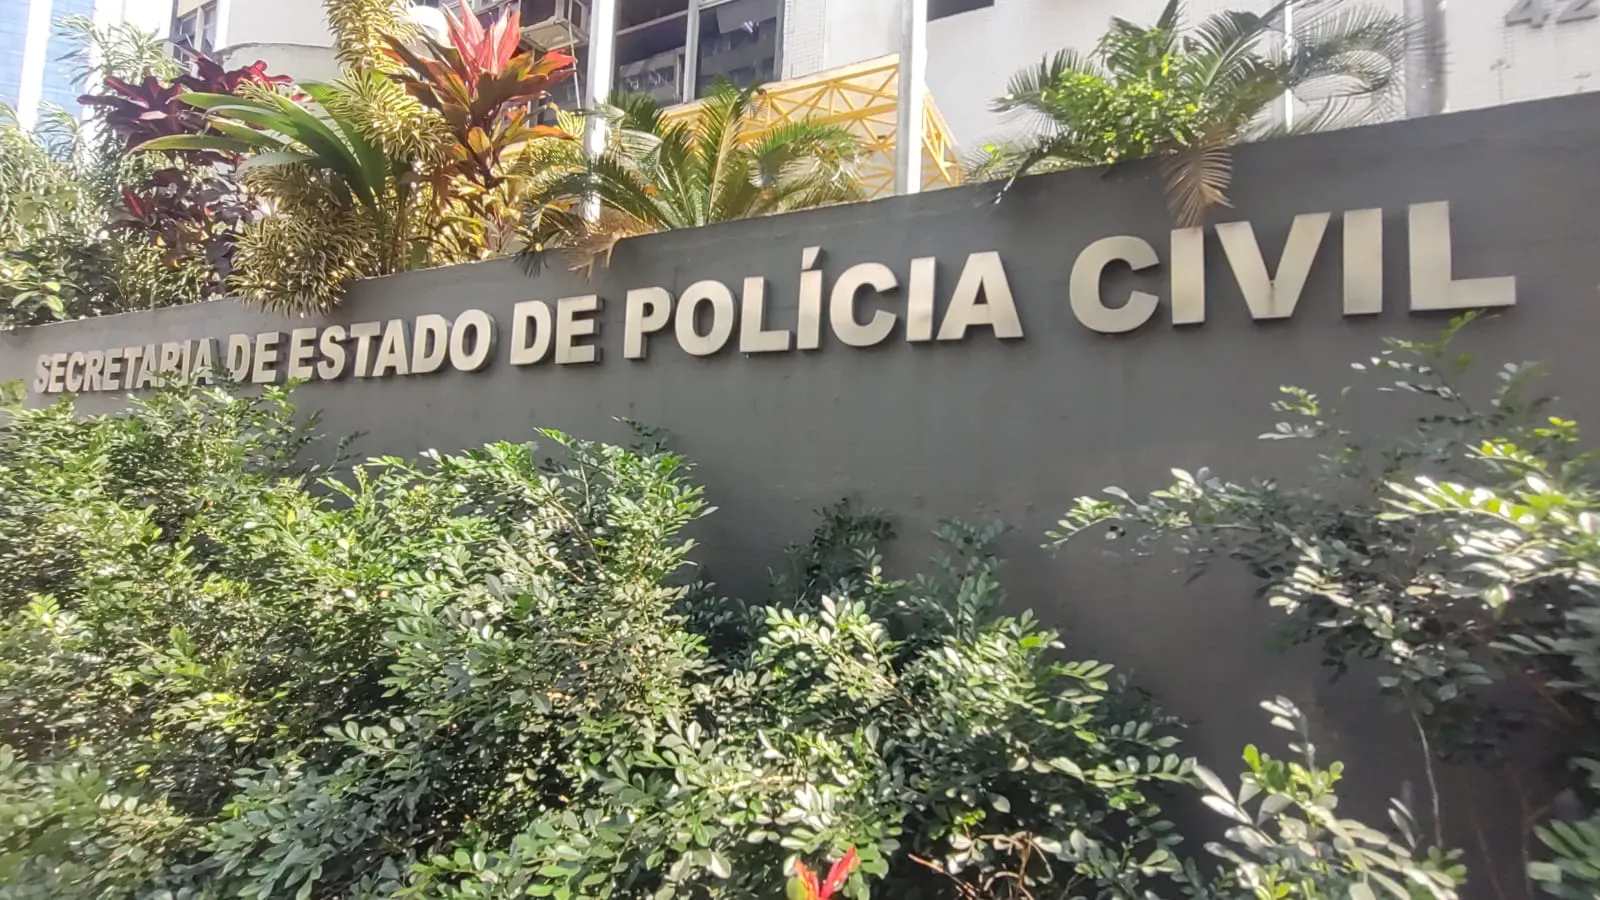 Ex-chefe da Polícia Civil foi levado para a sede da corregedoria, no Centro do Rio.